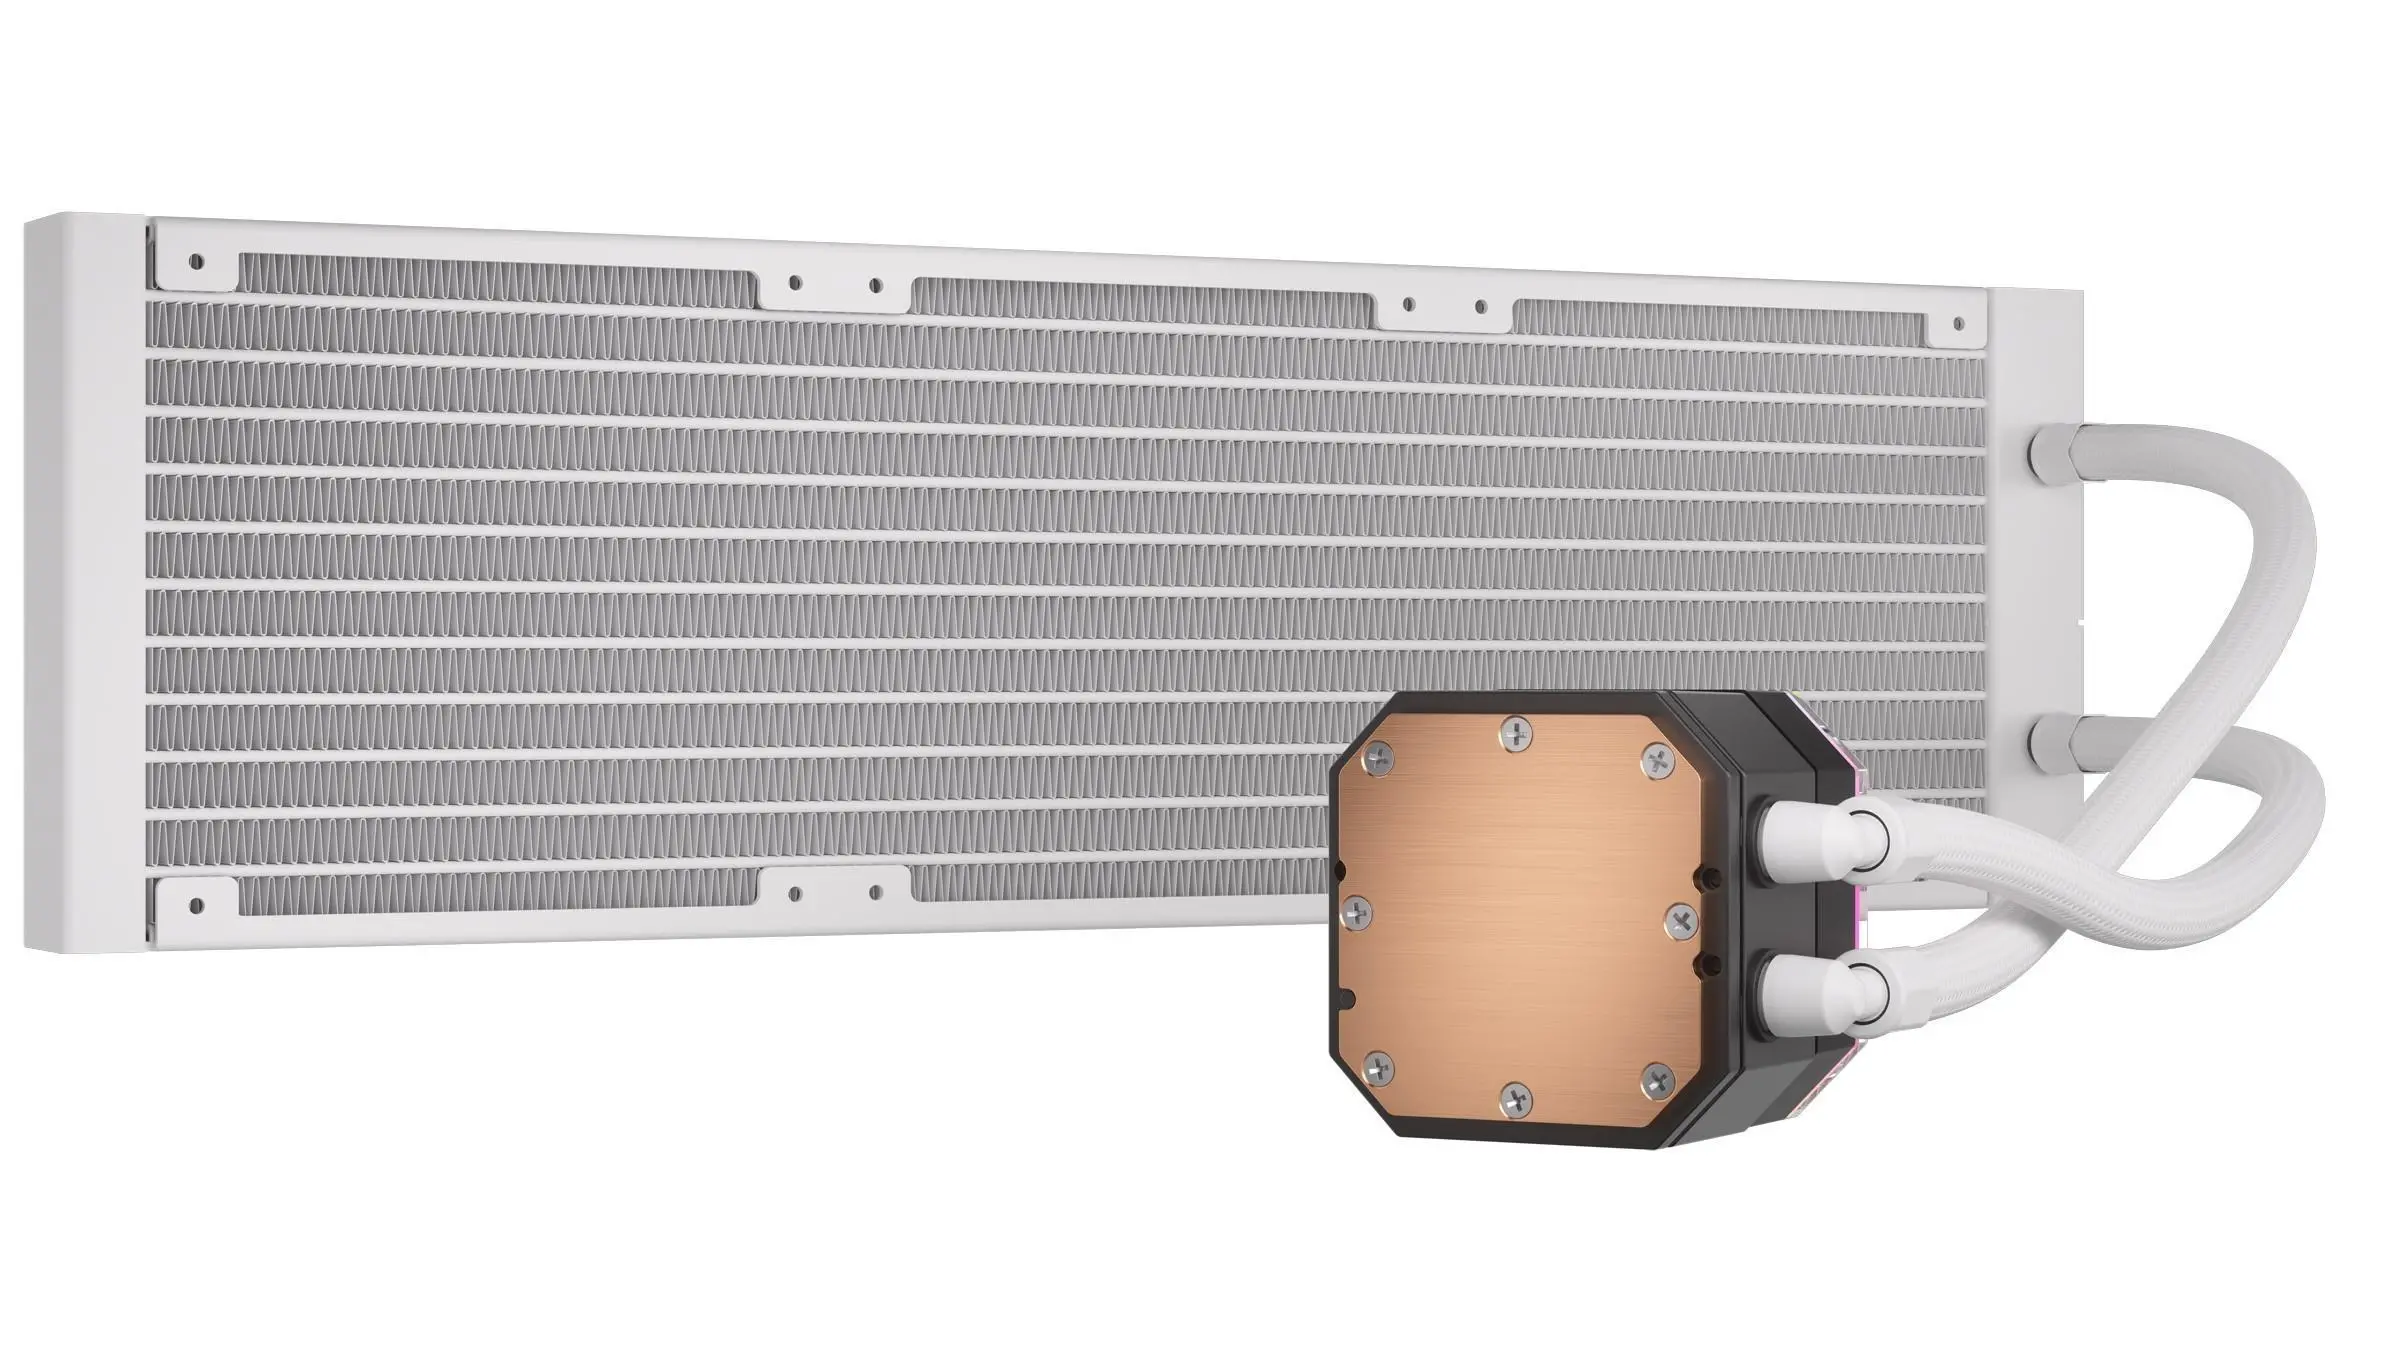 Corsair iCUE H150i ELITE CAPELLIX XT White, 360mm Radiator, Liquid CPU Cooler - image 2